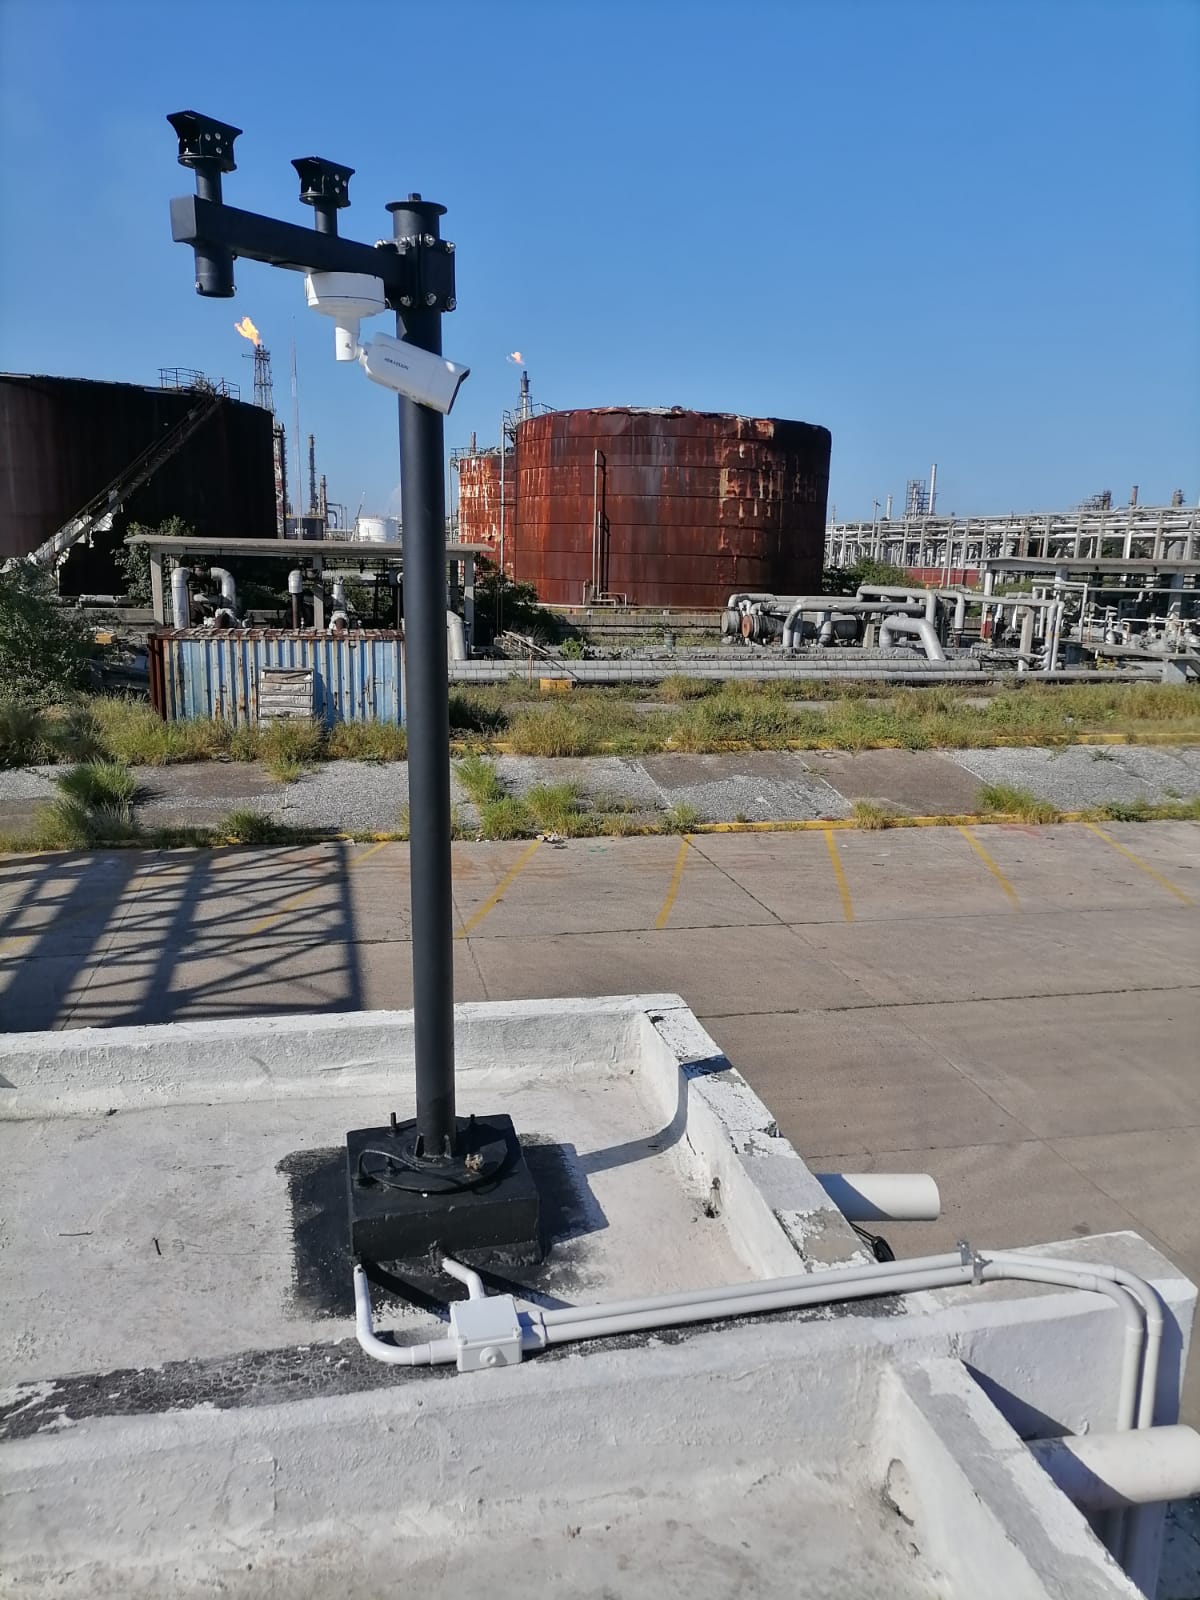 Puerto de Tampico Madero confía en Hikvision para robustecer su sistema de seguridad portuaria